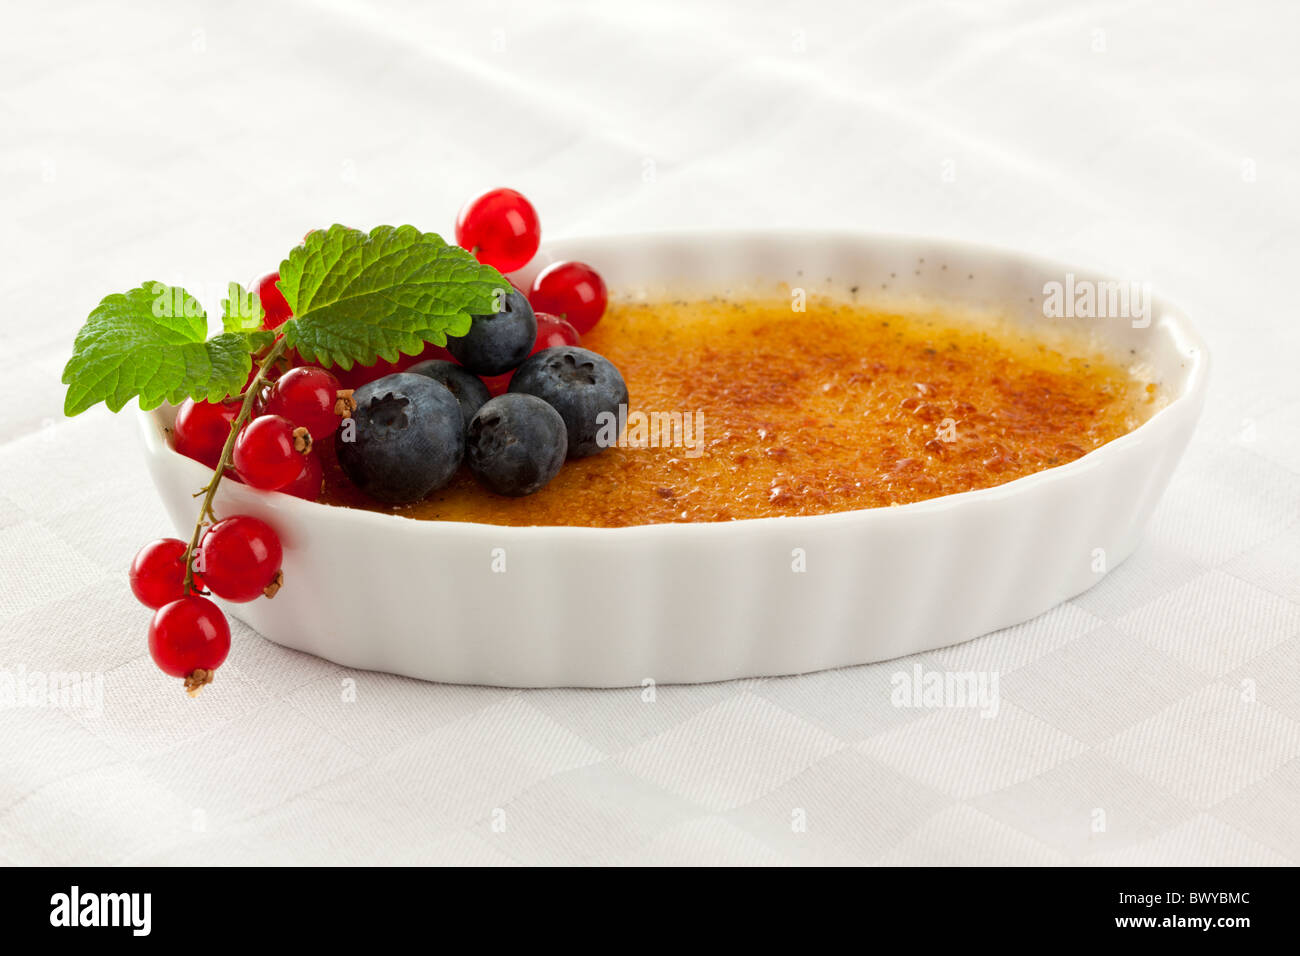 traditionelle französische Dessert Crème brûlée mit Berry Frucht Snd Minze garniert Stockfoto